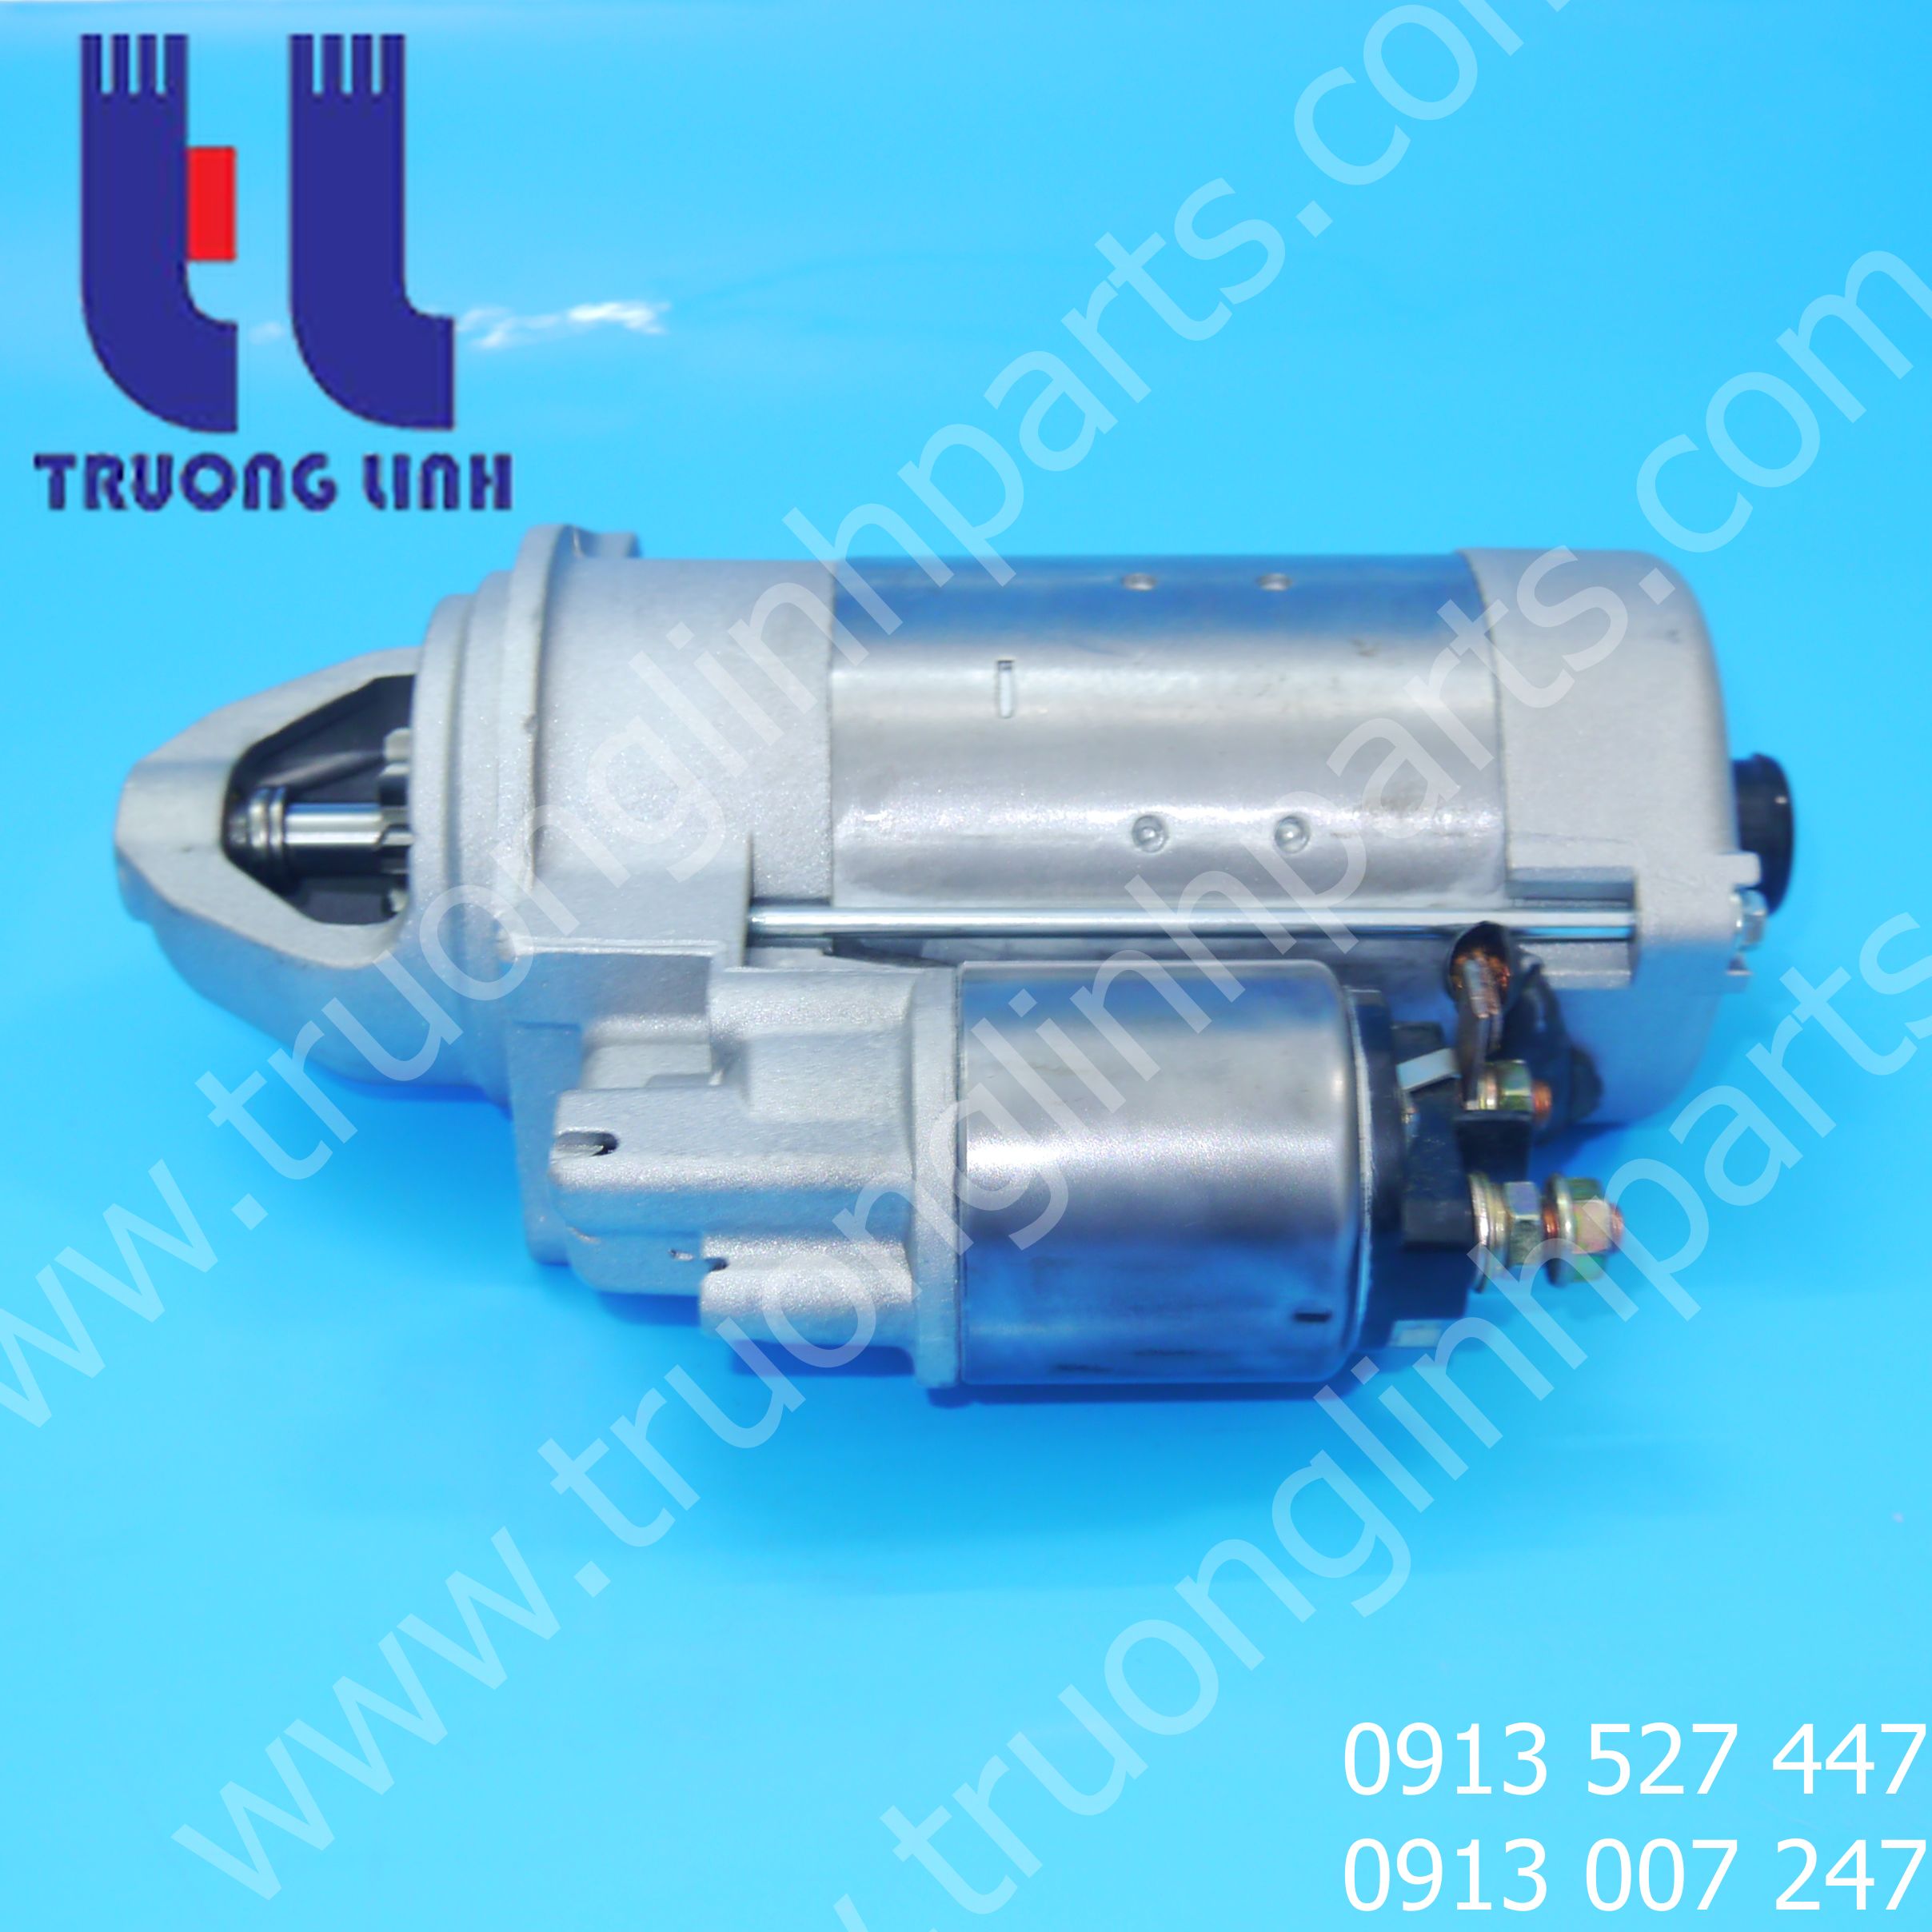 Turbo động cơ deutz - nhà cung cấp phụ tùng động cơ deutz chính hãng